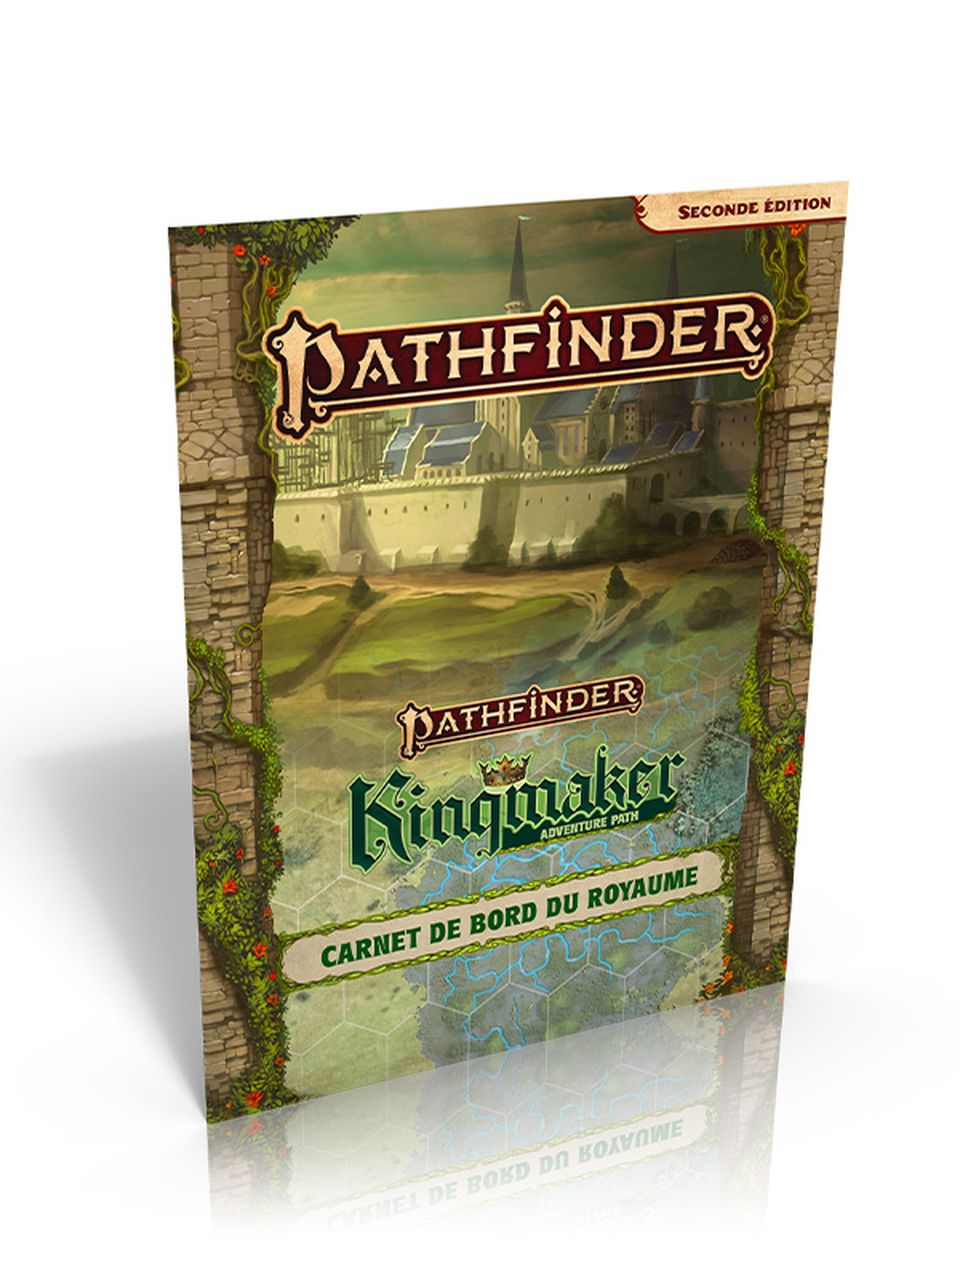 Pathfinder 2 - Kingmaker 10ème anniversaire - Carnet de bord du royaume image